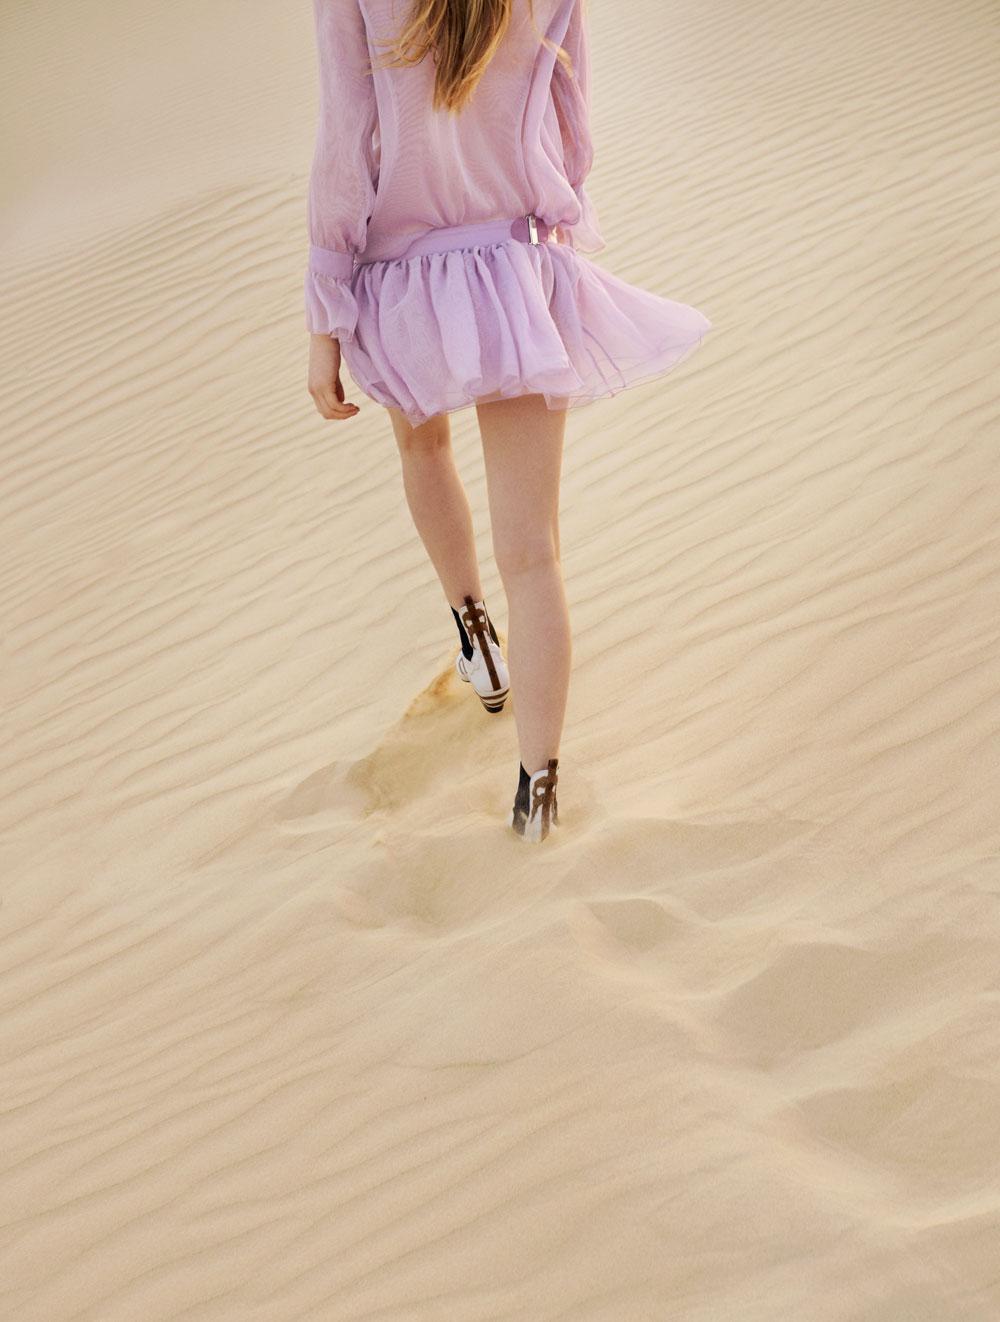 Zijden jurk, Emporio Armani. Korte laarzen Fireball van tweekleurig leer, Louis Vuitton.